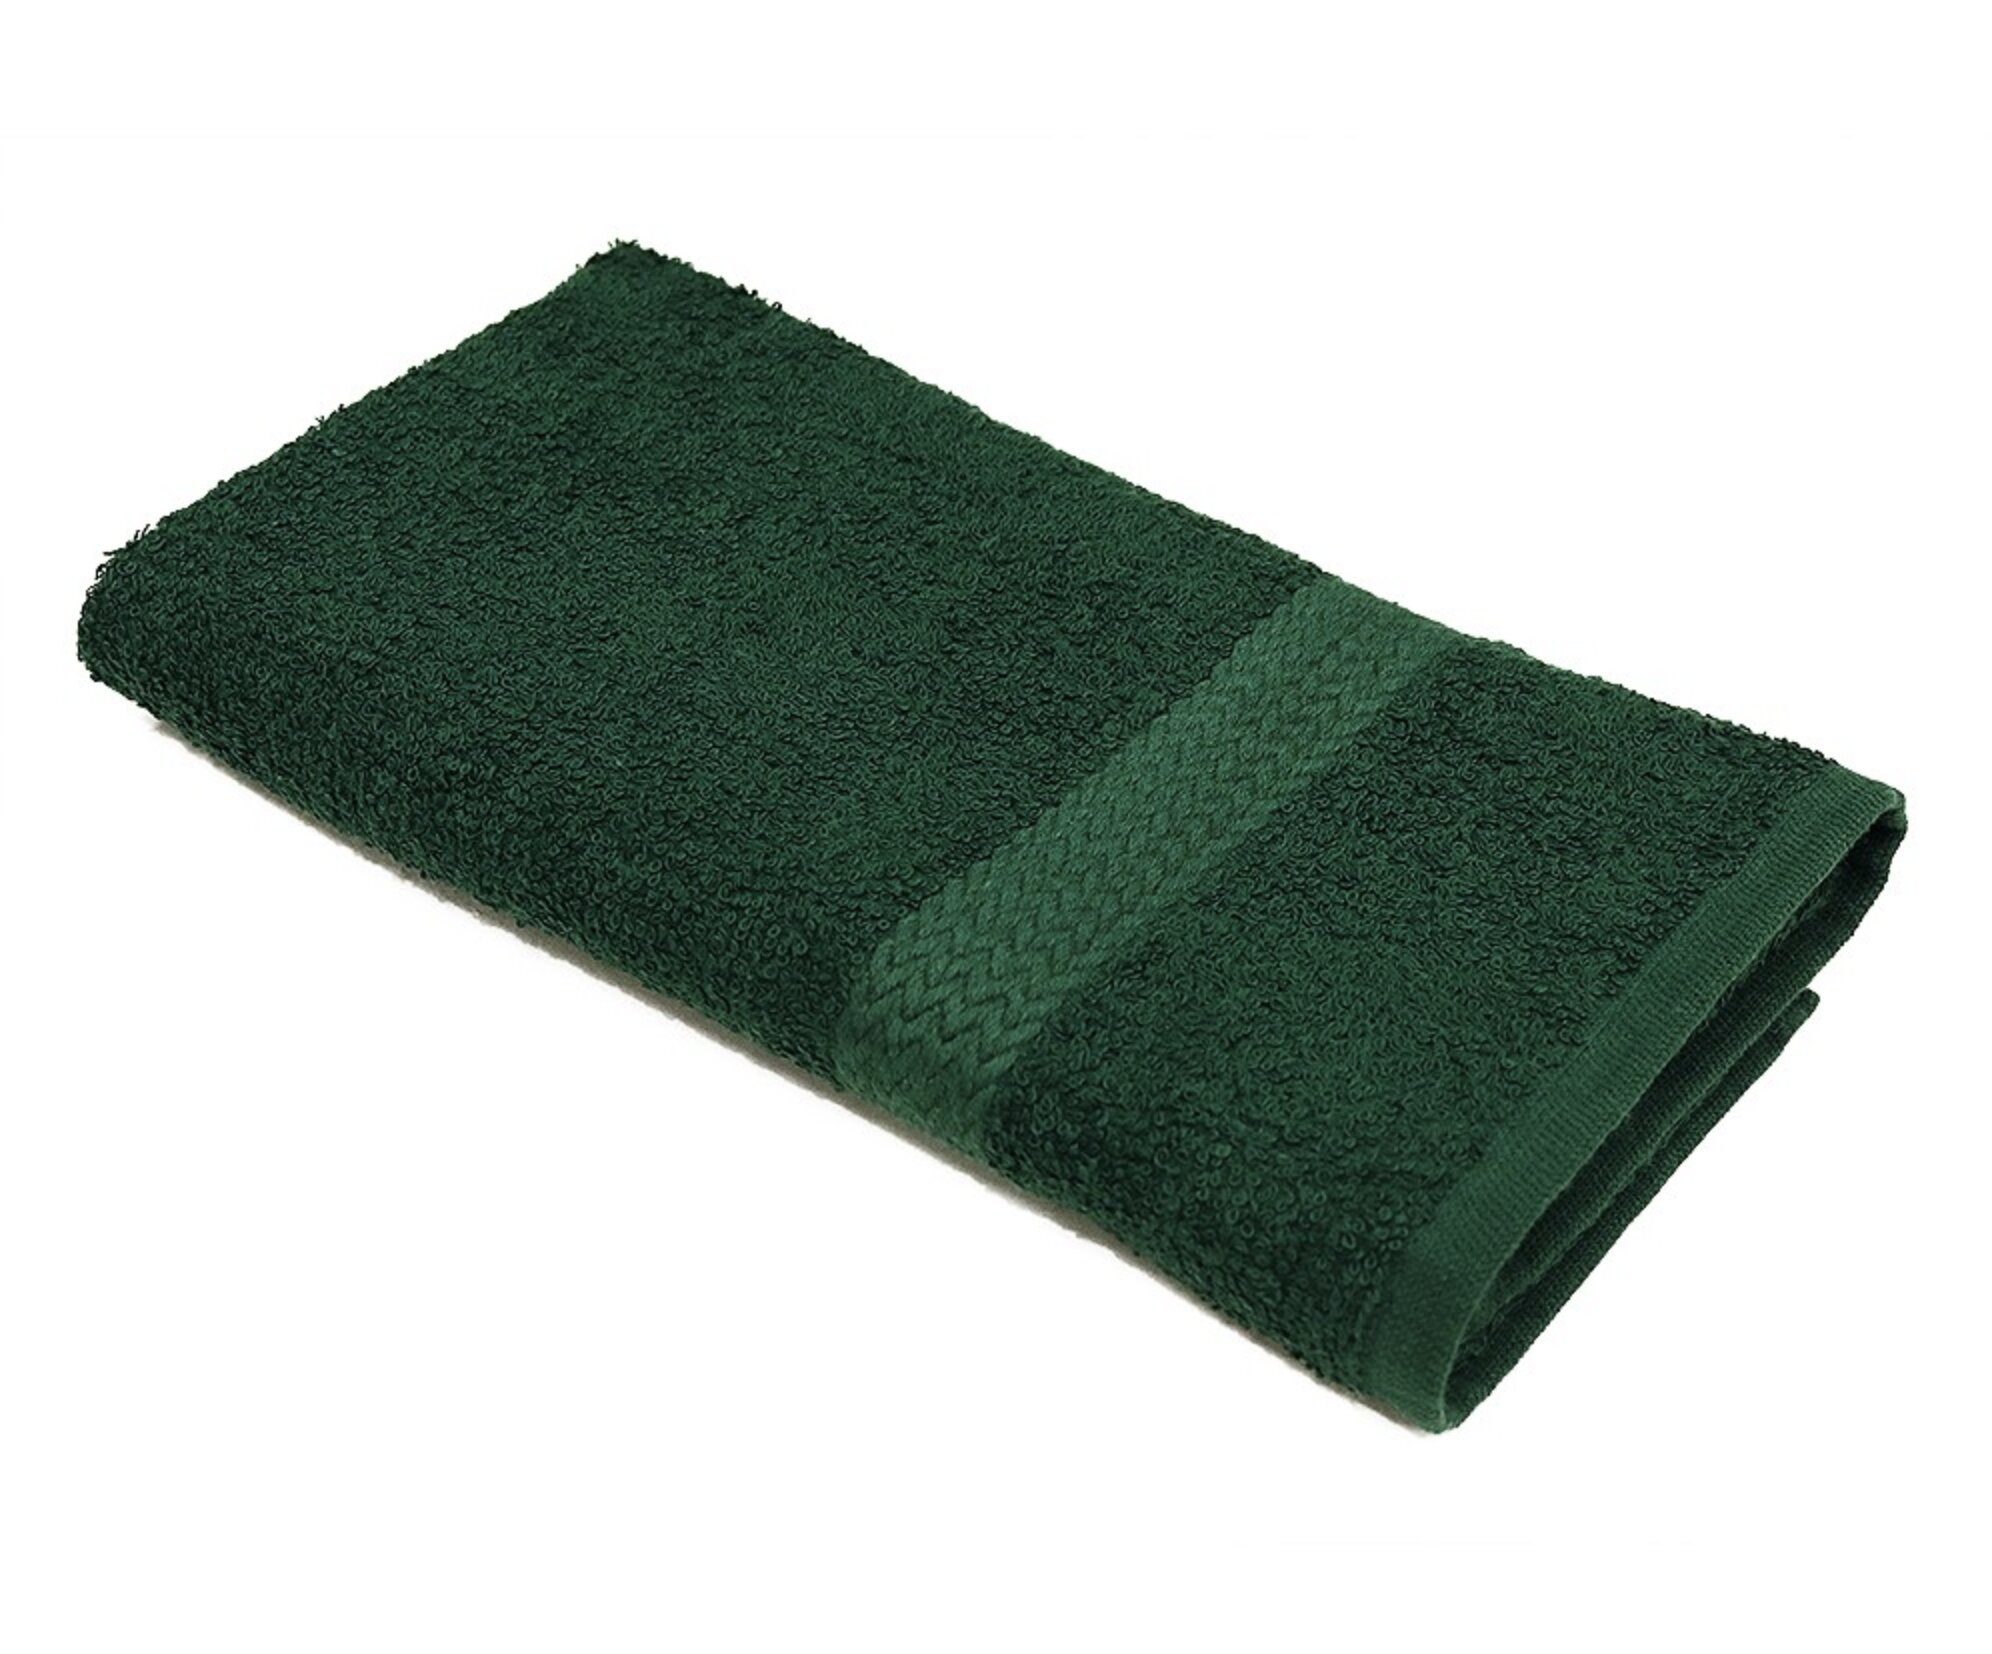 Etta Avenue™ Saige Ultra Soft Quick-Drying 8-Piece Cotton Towel Set &  Reviews